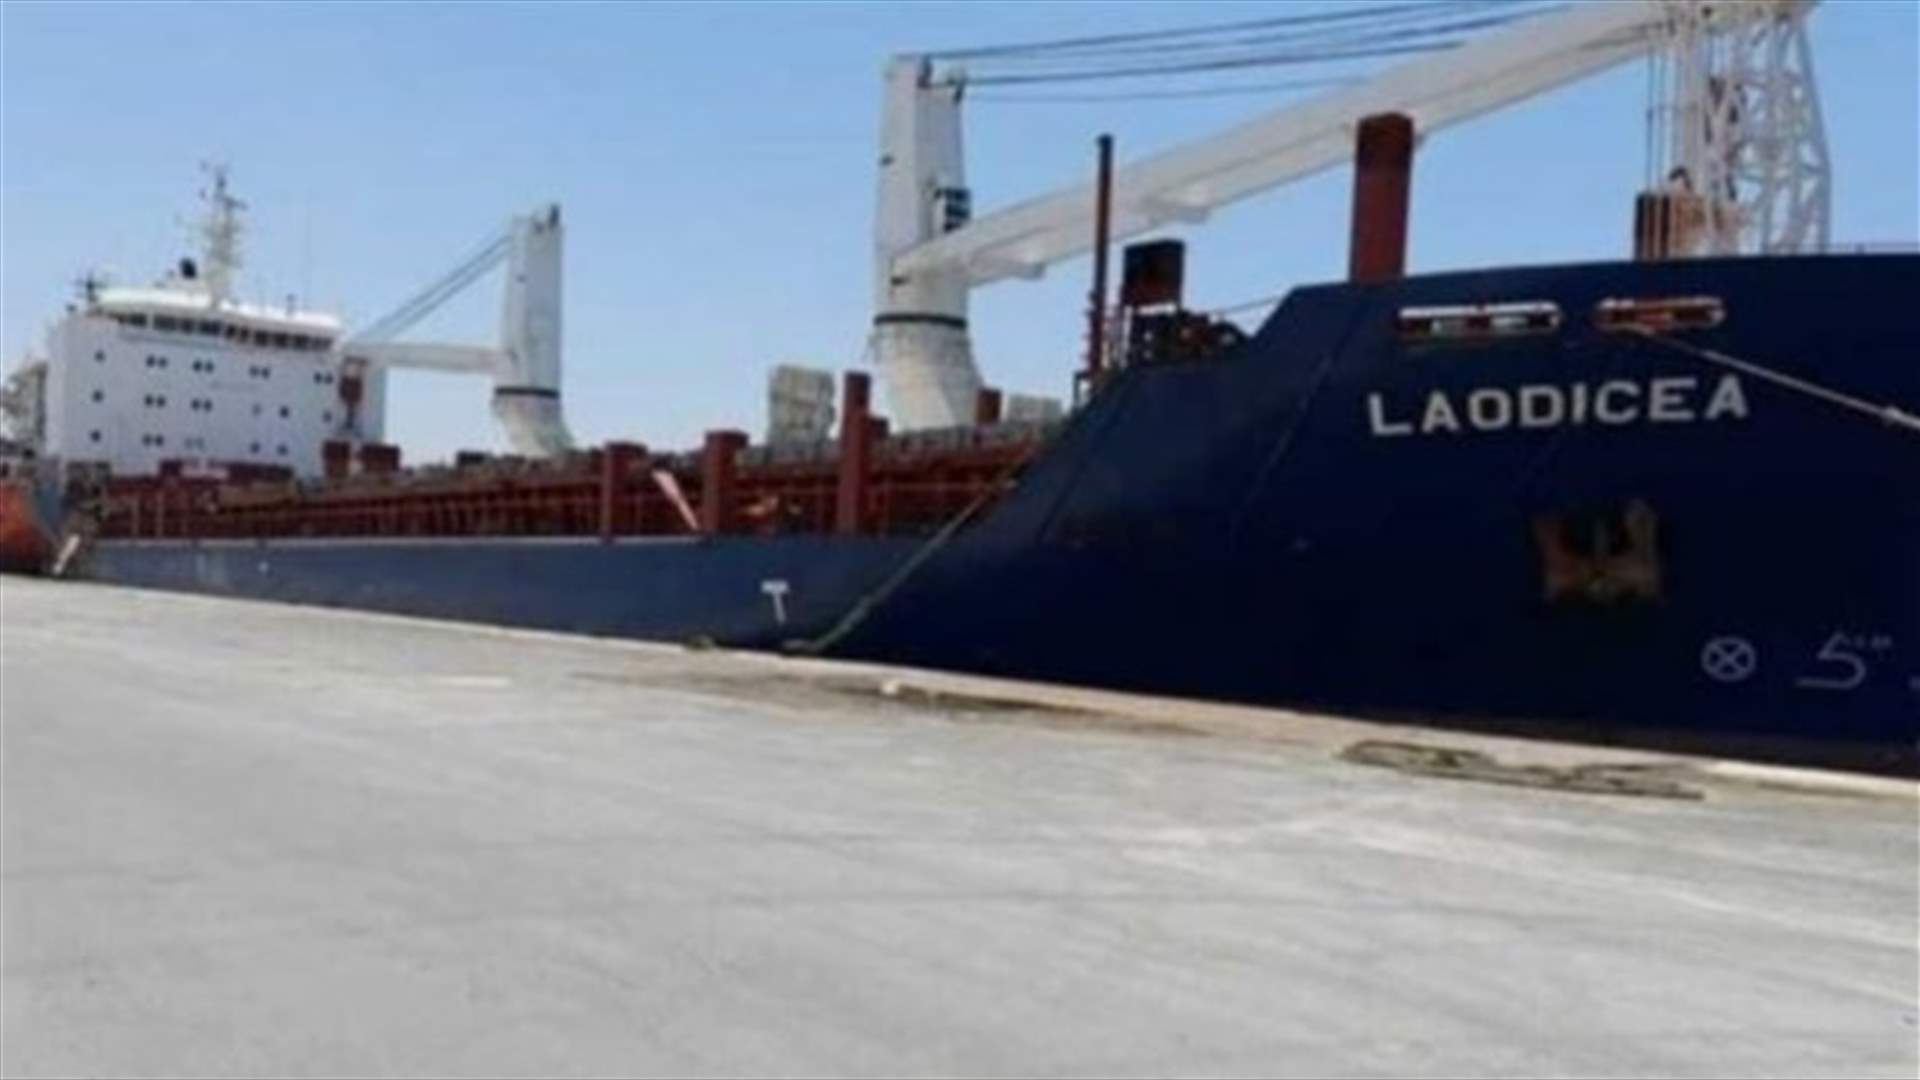 قاضية العجلة في طرابلس تُفرج عن السفينة لوديسيا